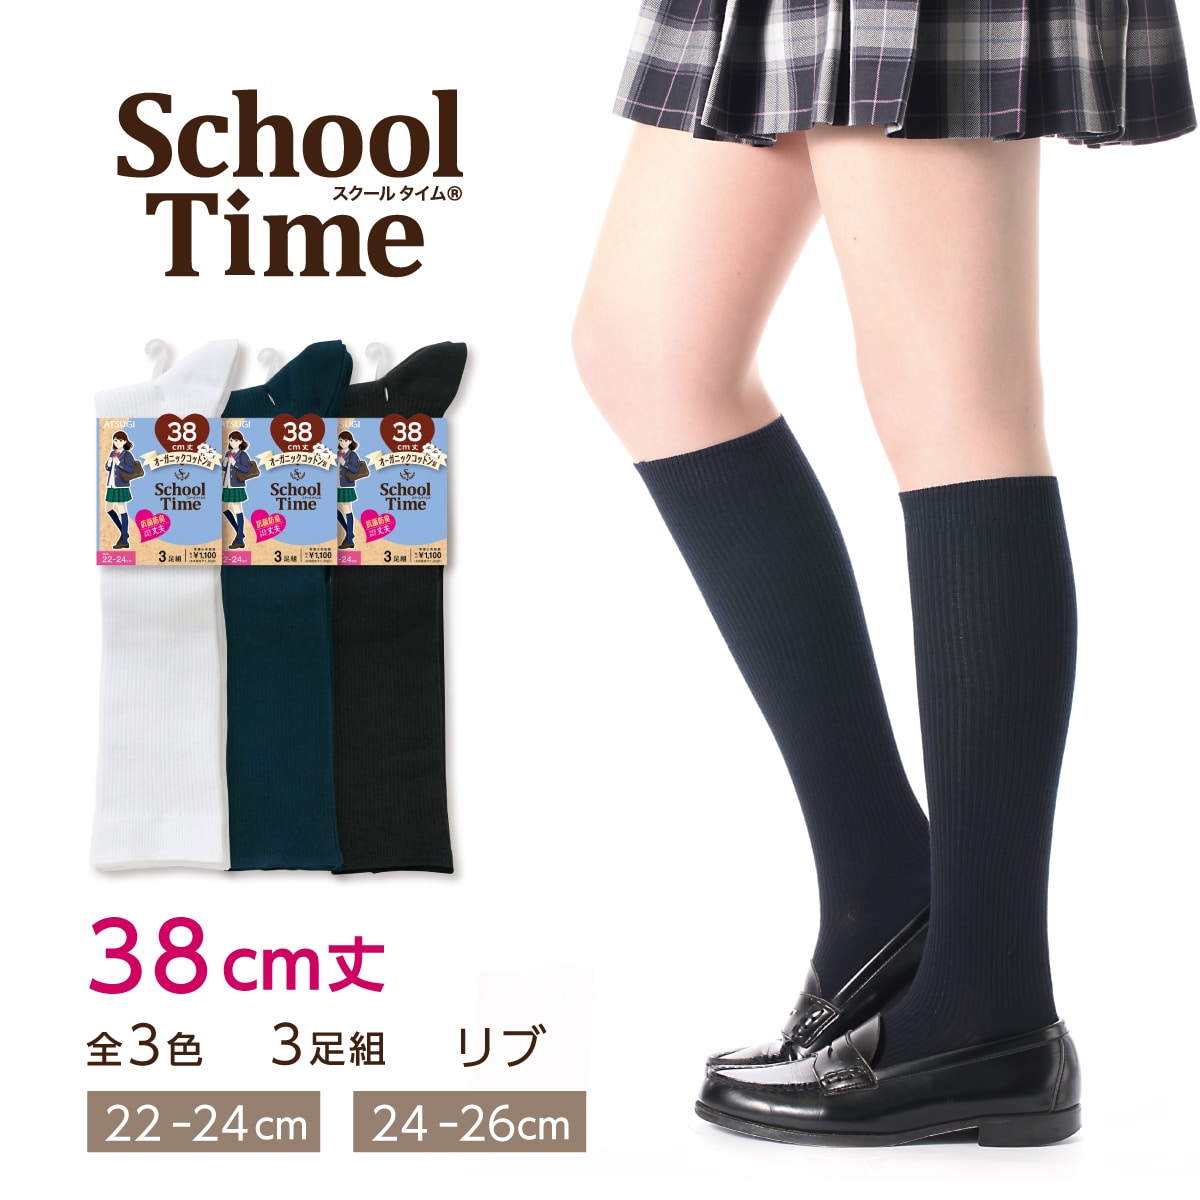 公式) School time / スクールタイム 学生用 リブ 3足組 38cm丈 リブ